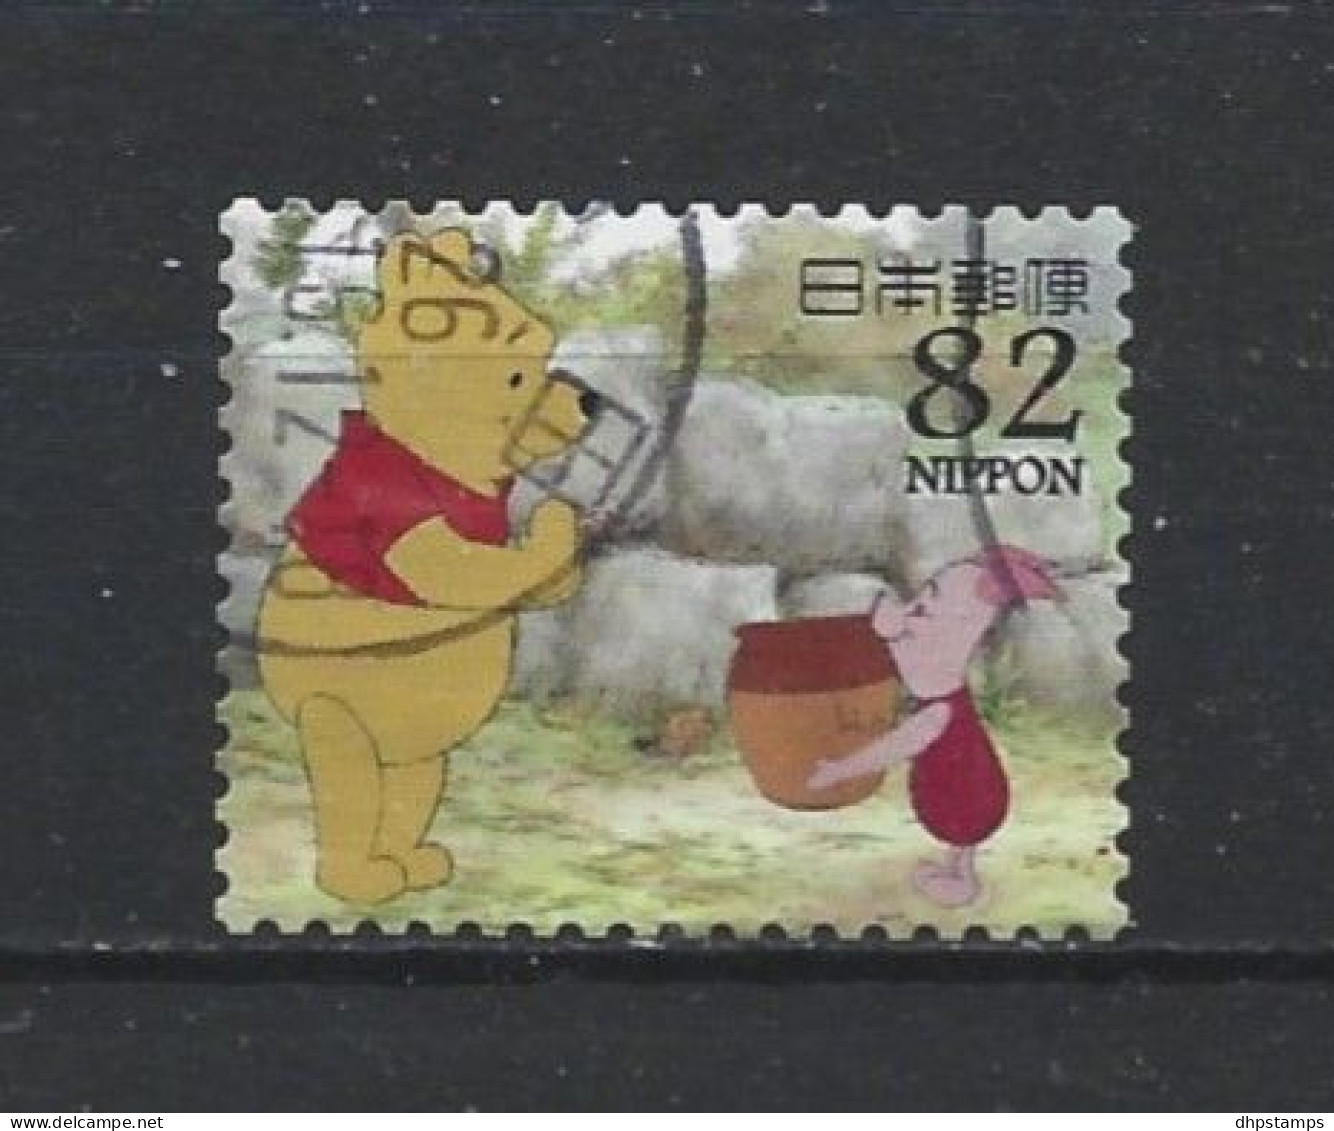 Japan 2014 Winnie The Pooh Y.T. 6568 (0) - Oblitérés